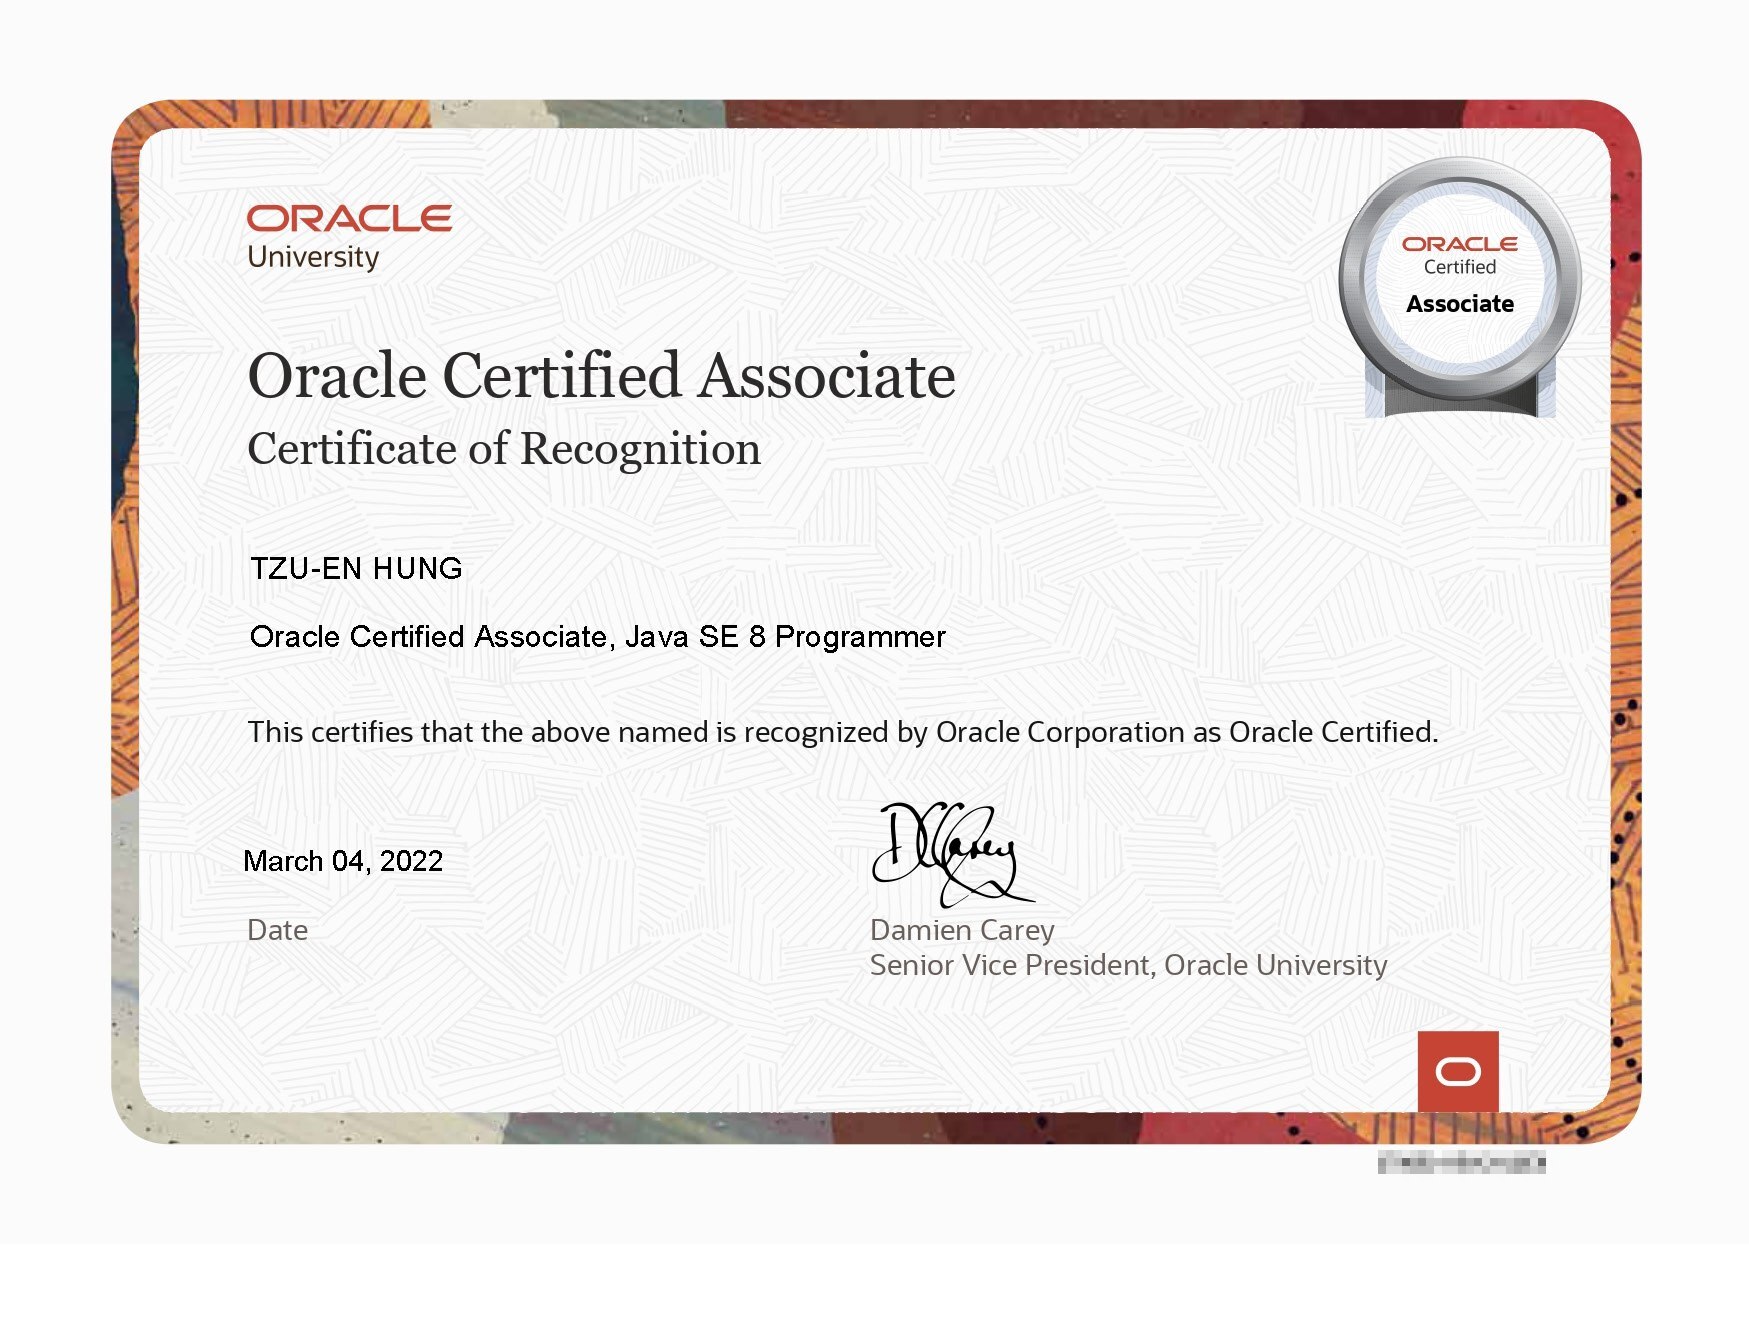 恭賀洪子恩同學考取Oracle Java SE 8 Programmer OCA 證照